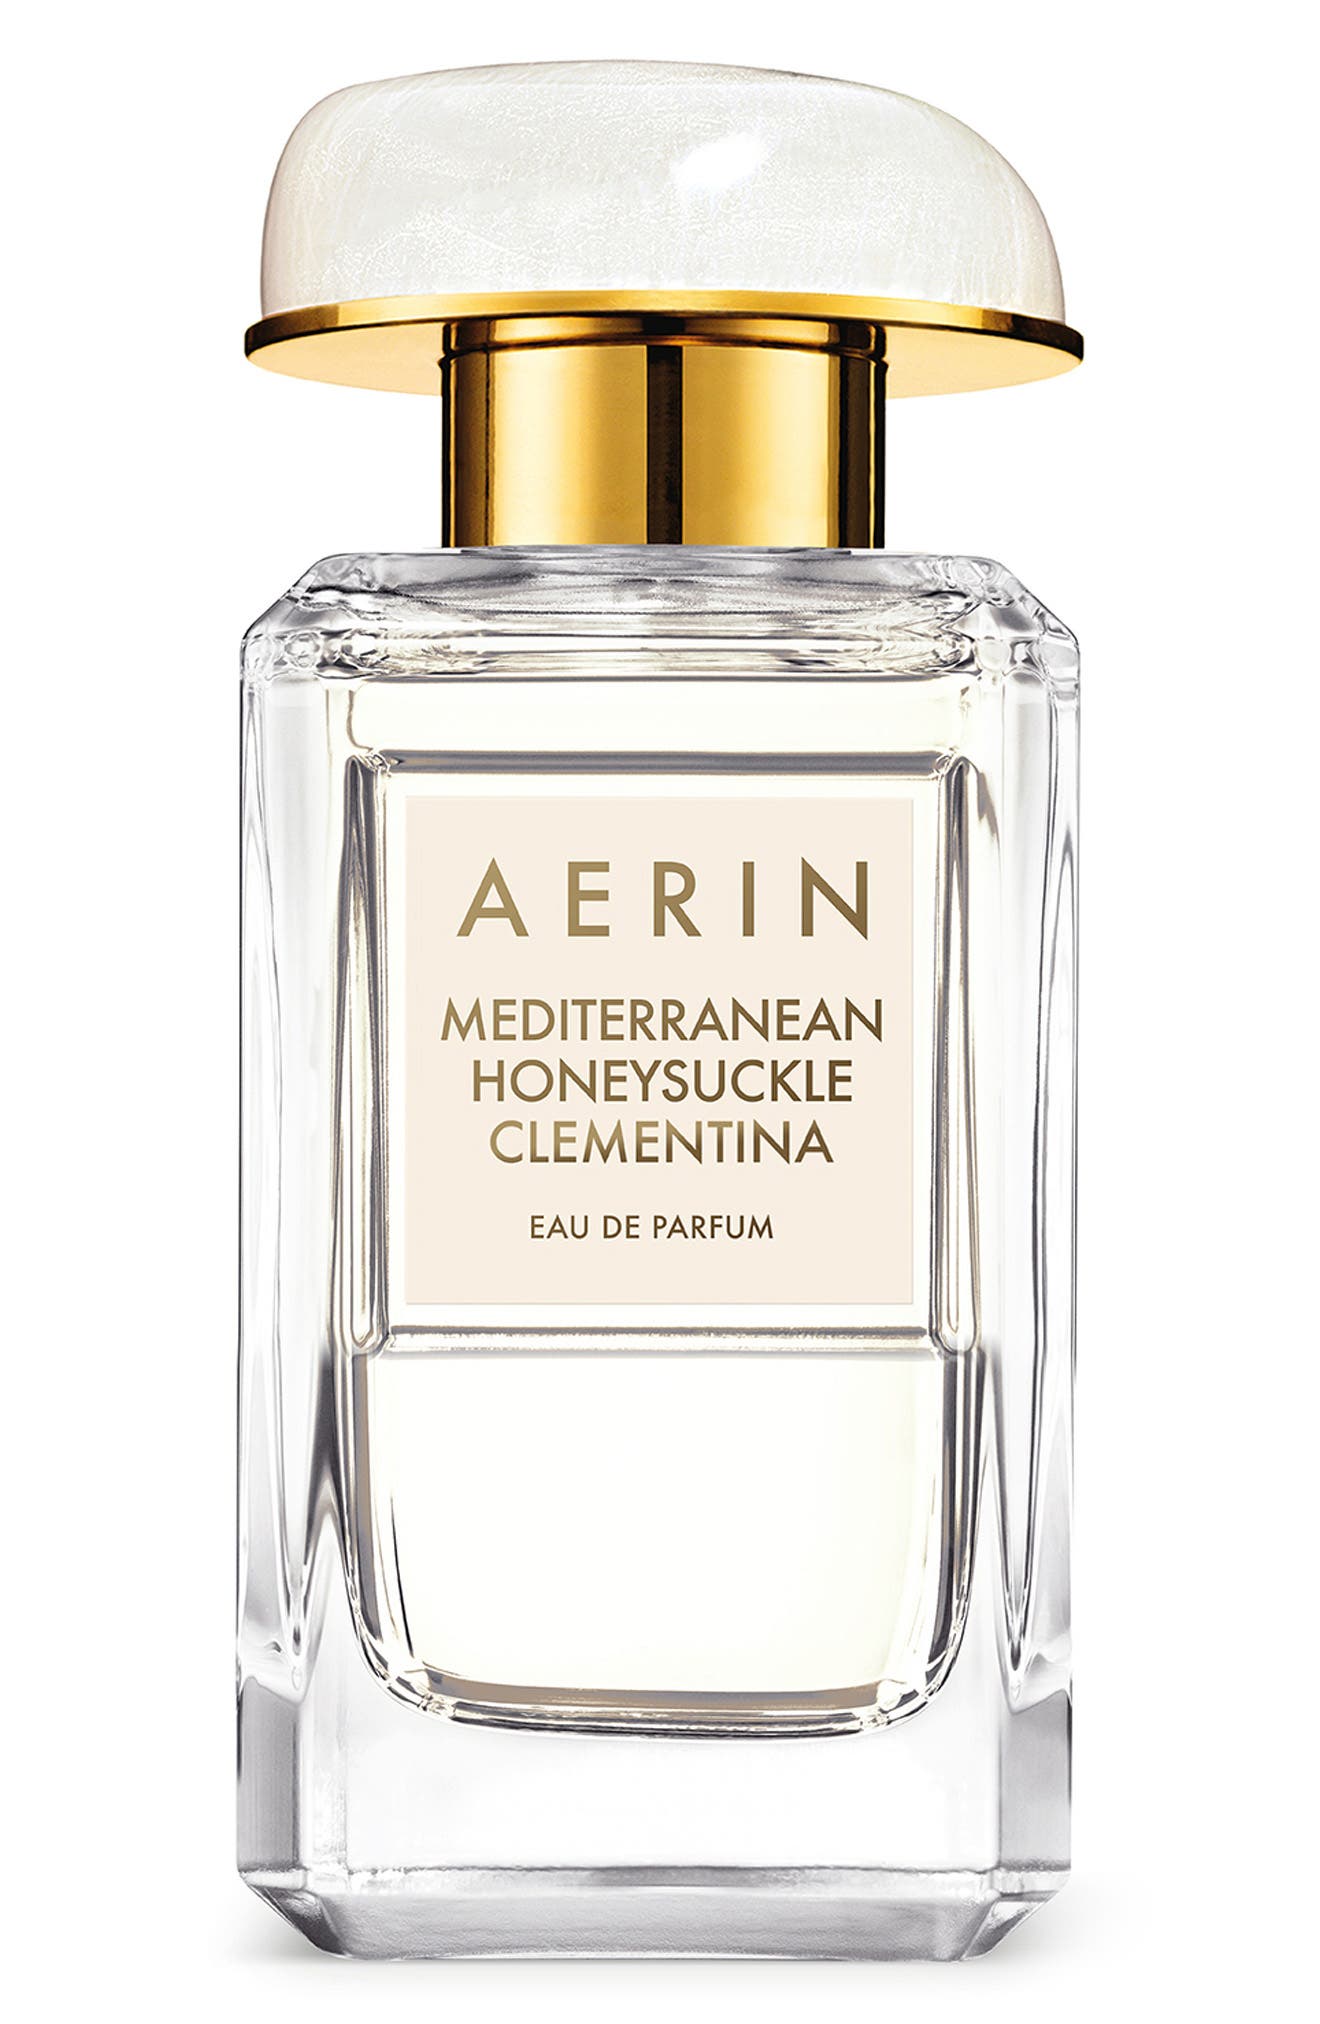 AERIN Mediterranean Honeysuckle Clementina Eau de Parfum Spray, 1.7 oz